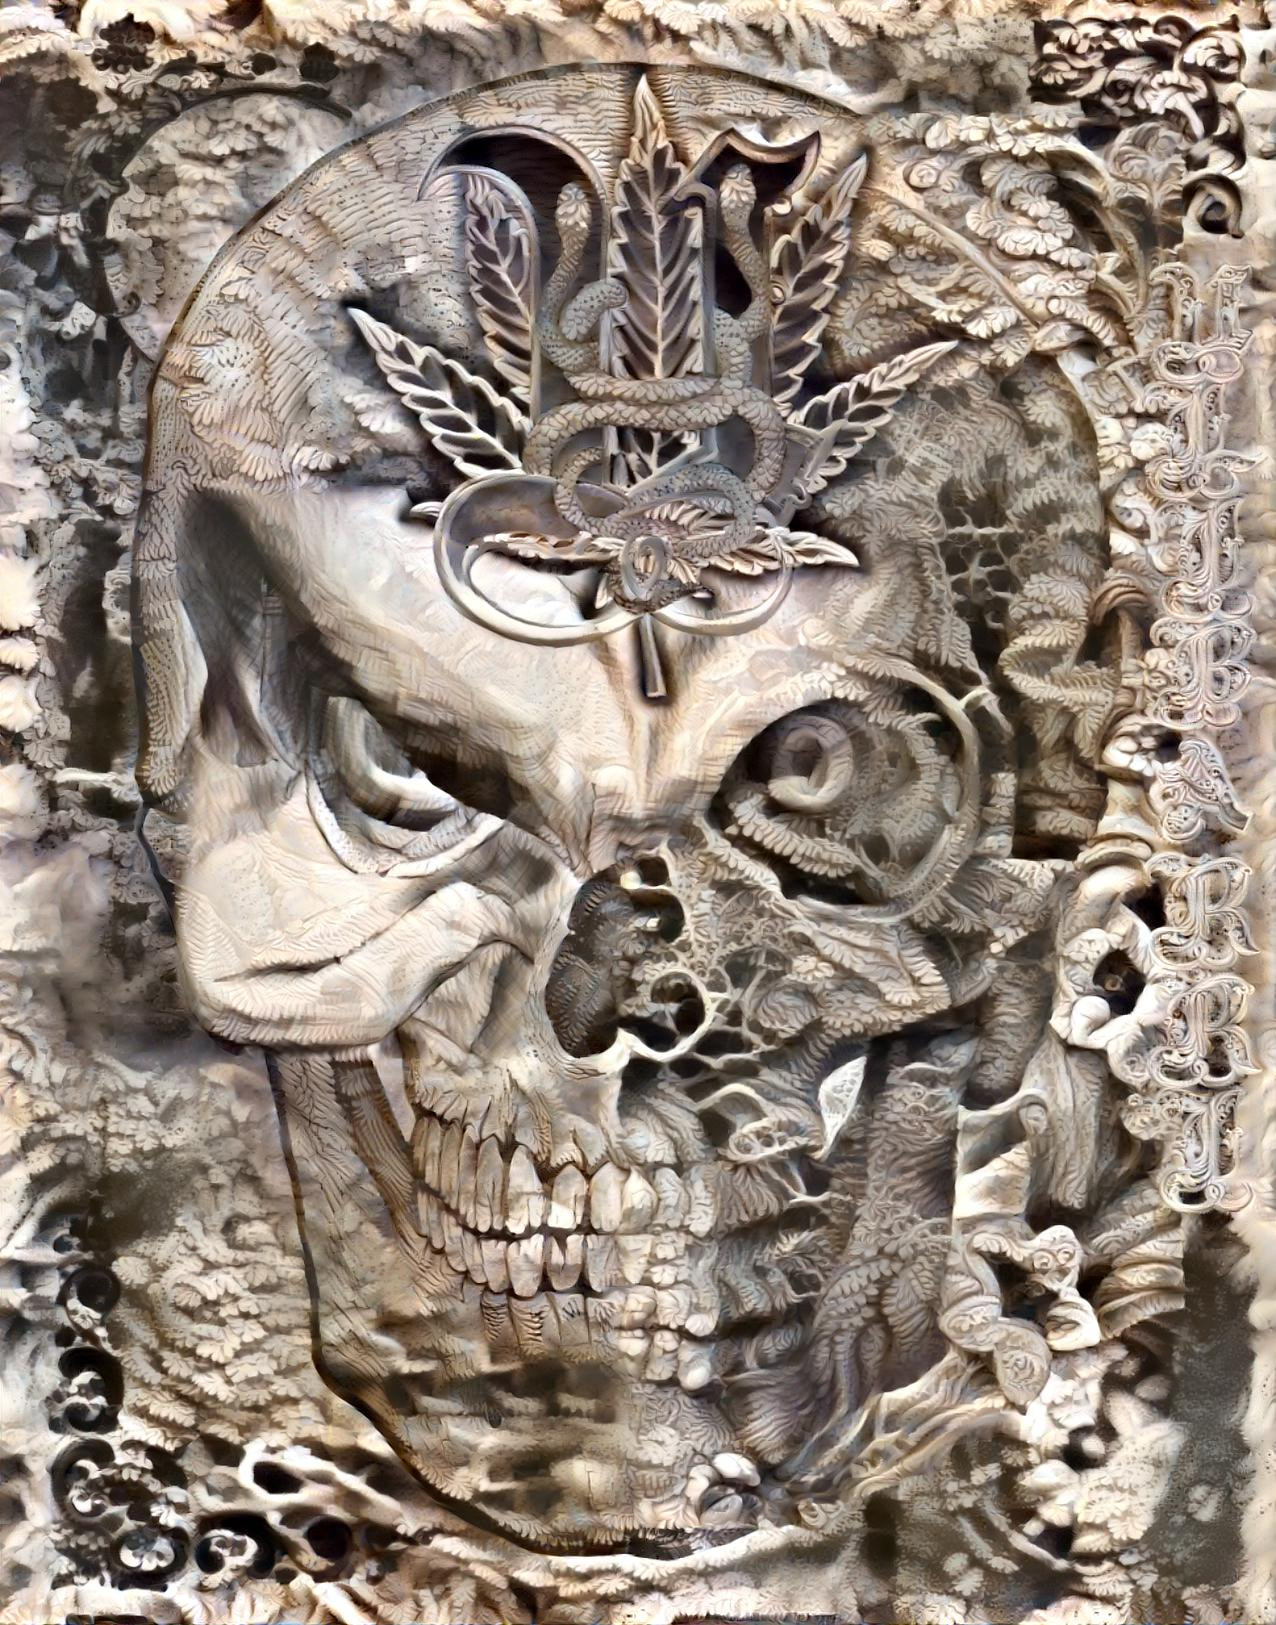 Skull Art